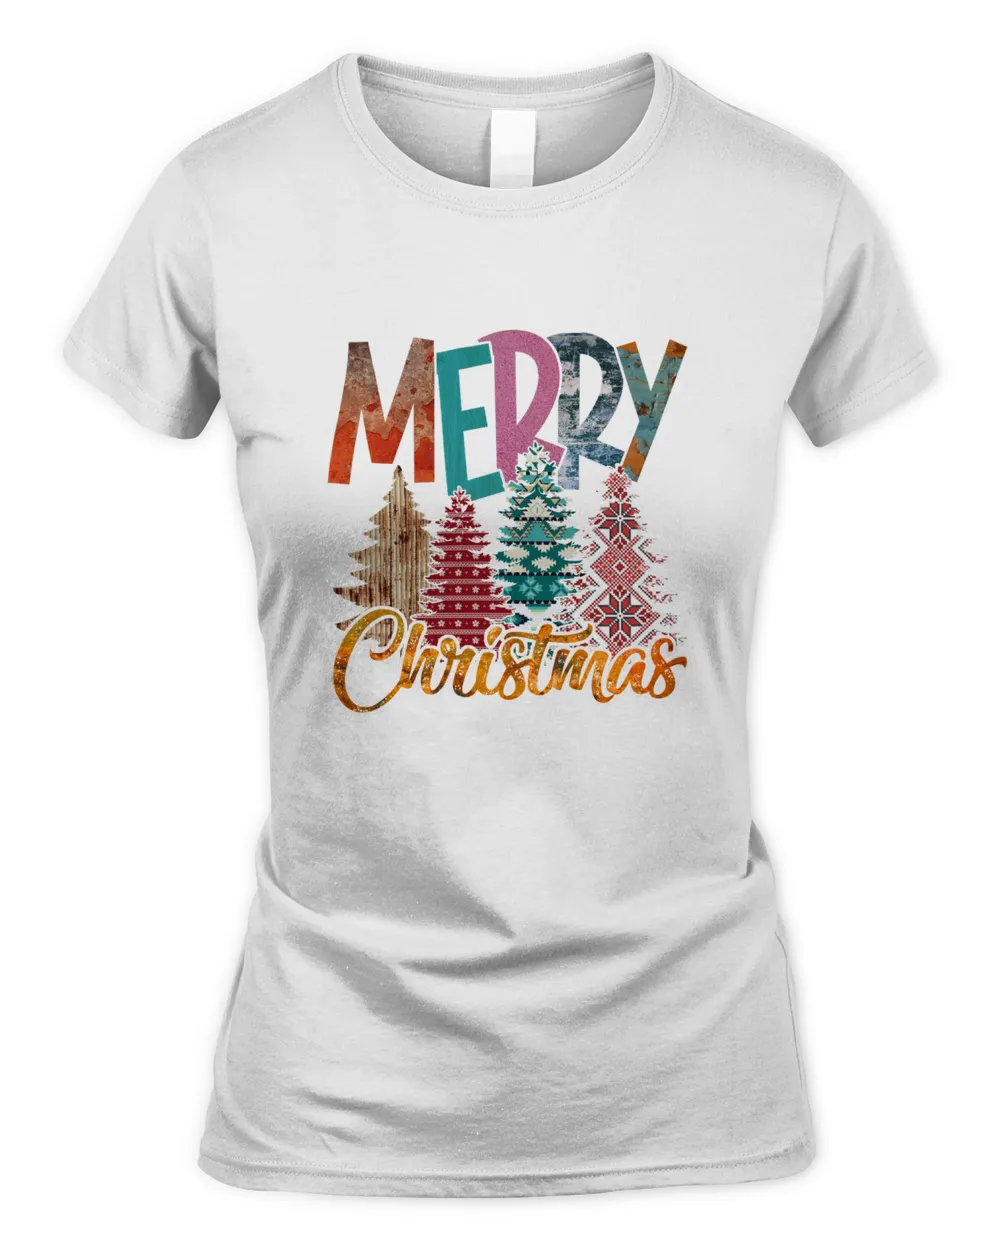 Merry Christmas Women Tree Shirt